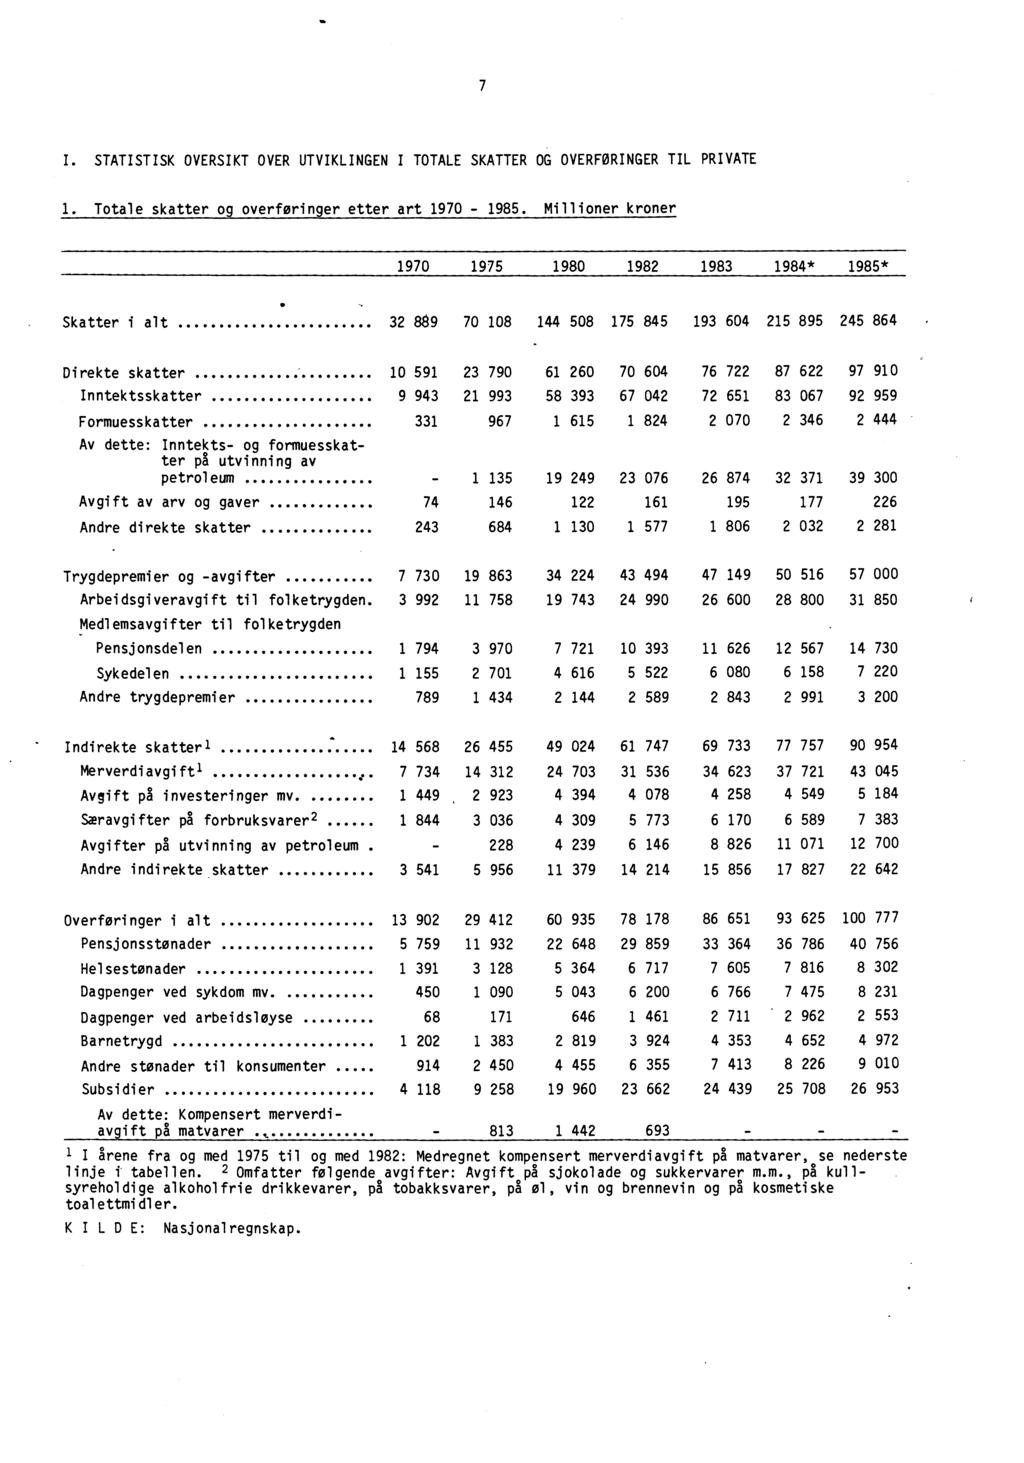 7 I. STATISTISK OVERSIKT OVER UTVIKLINGEN I TOTALE SKATTER OG OVERFORINGER TIL PRIVATE 1. Totale skatter og overforinger etter art 1970-1985.